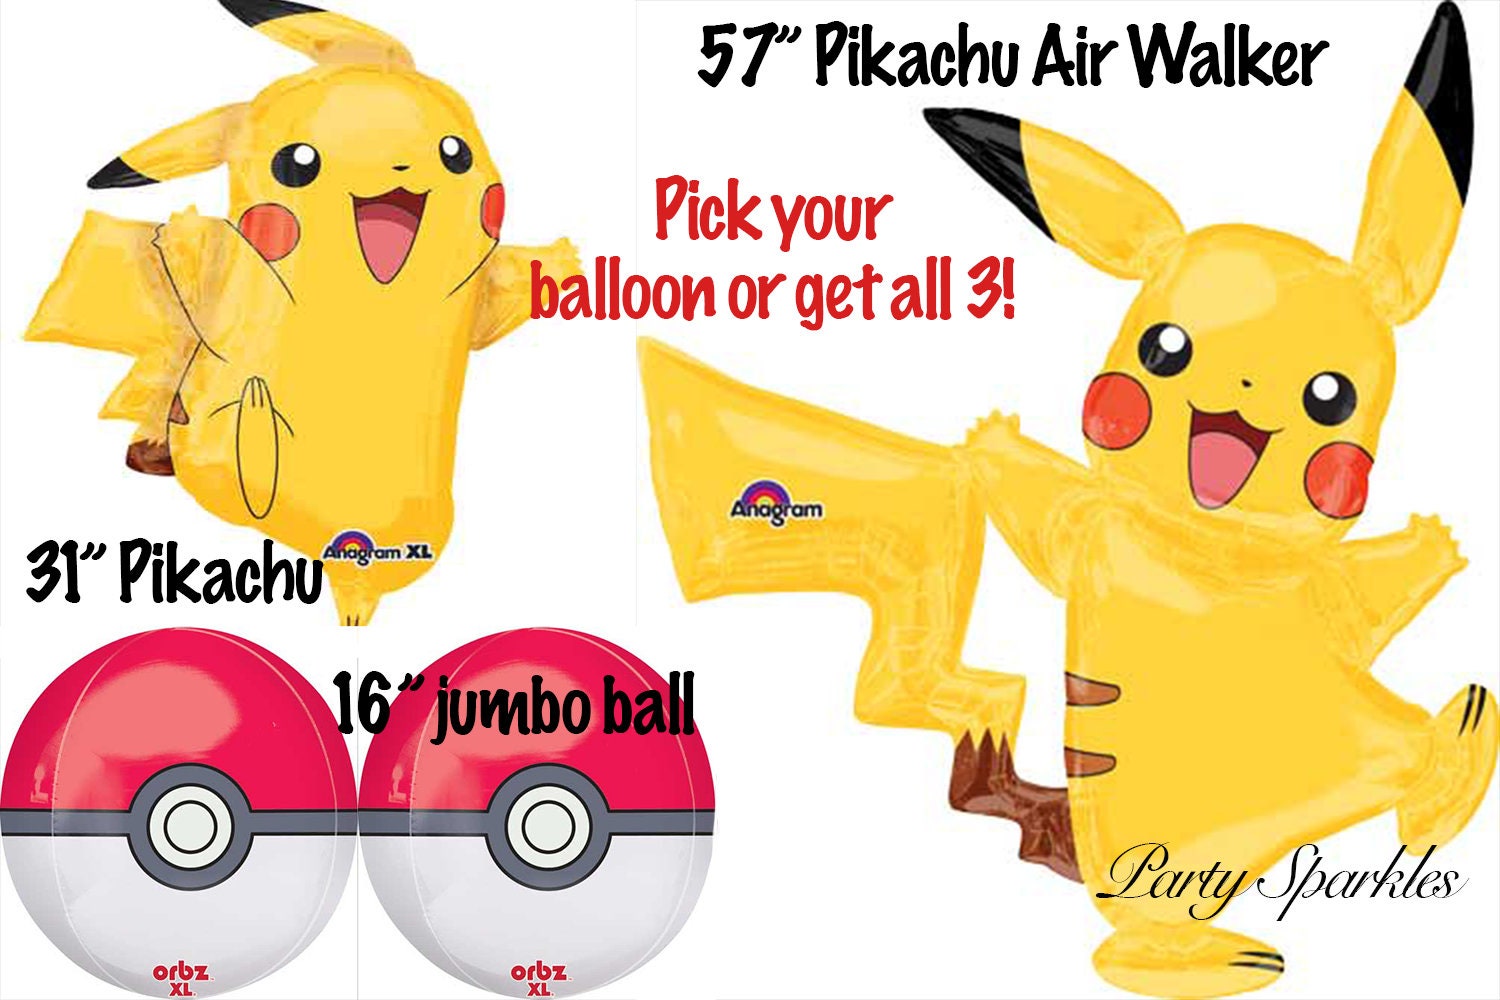 Anniversaire thème Pikachu : les idées pour une déco Pokémon ! - Le blog de